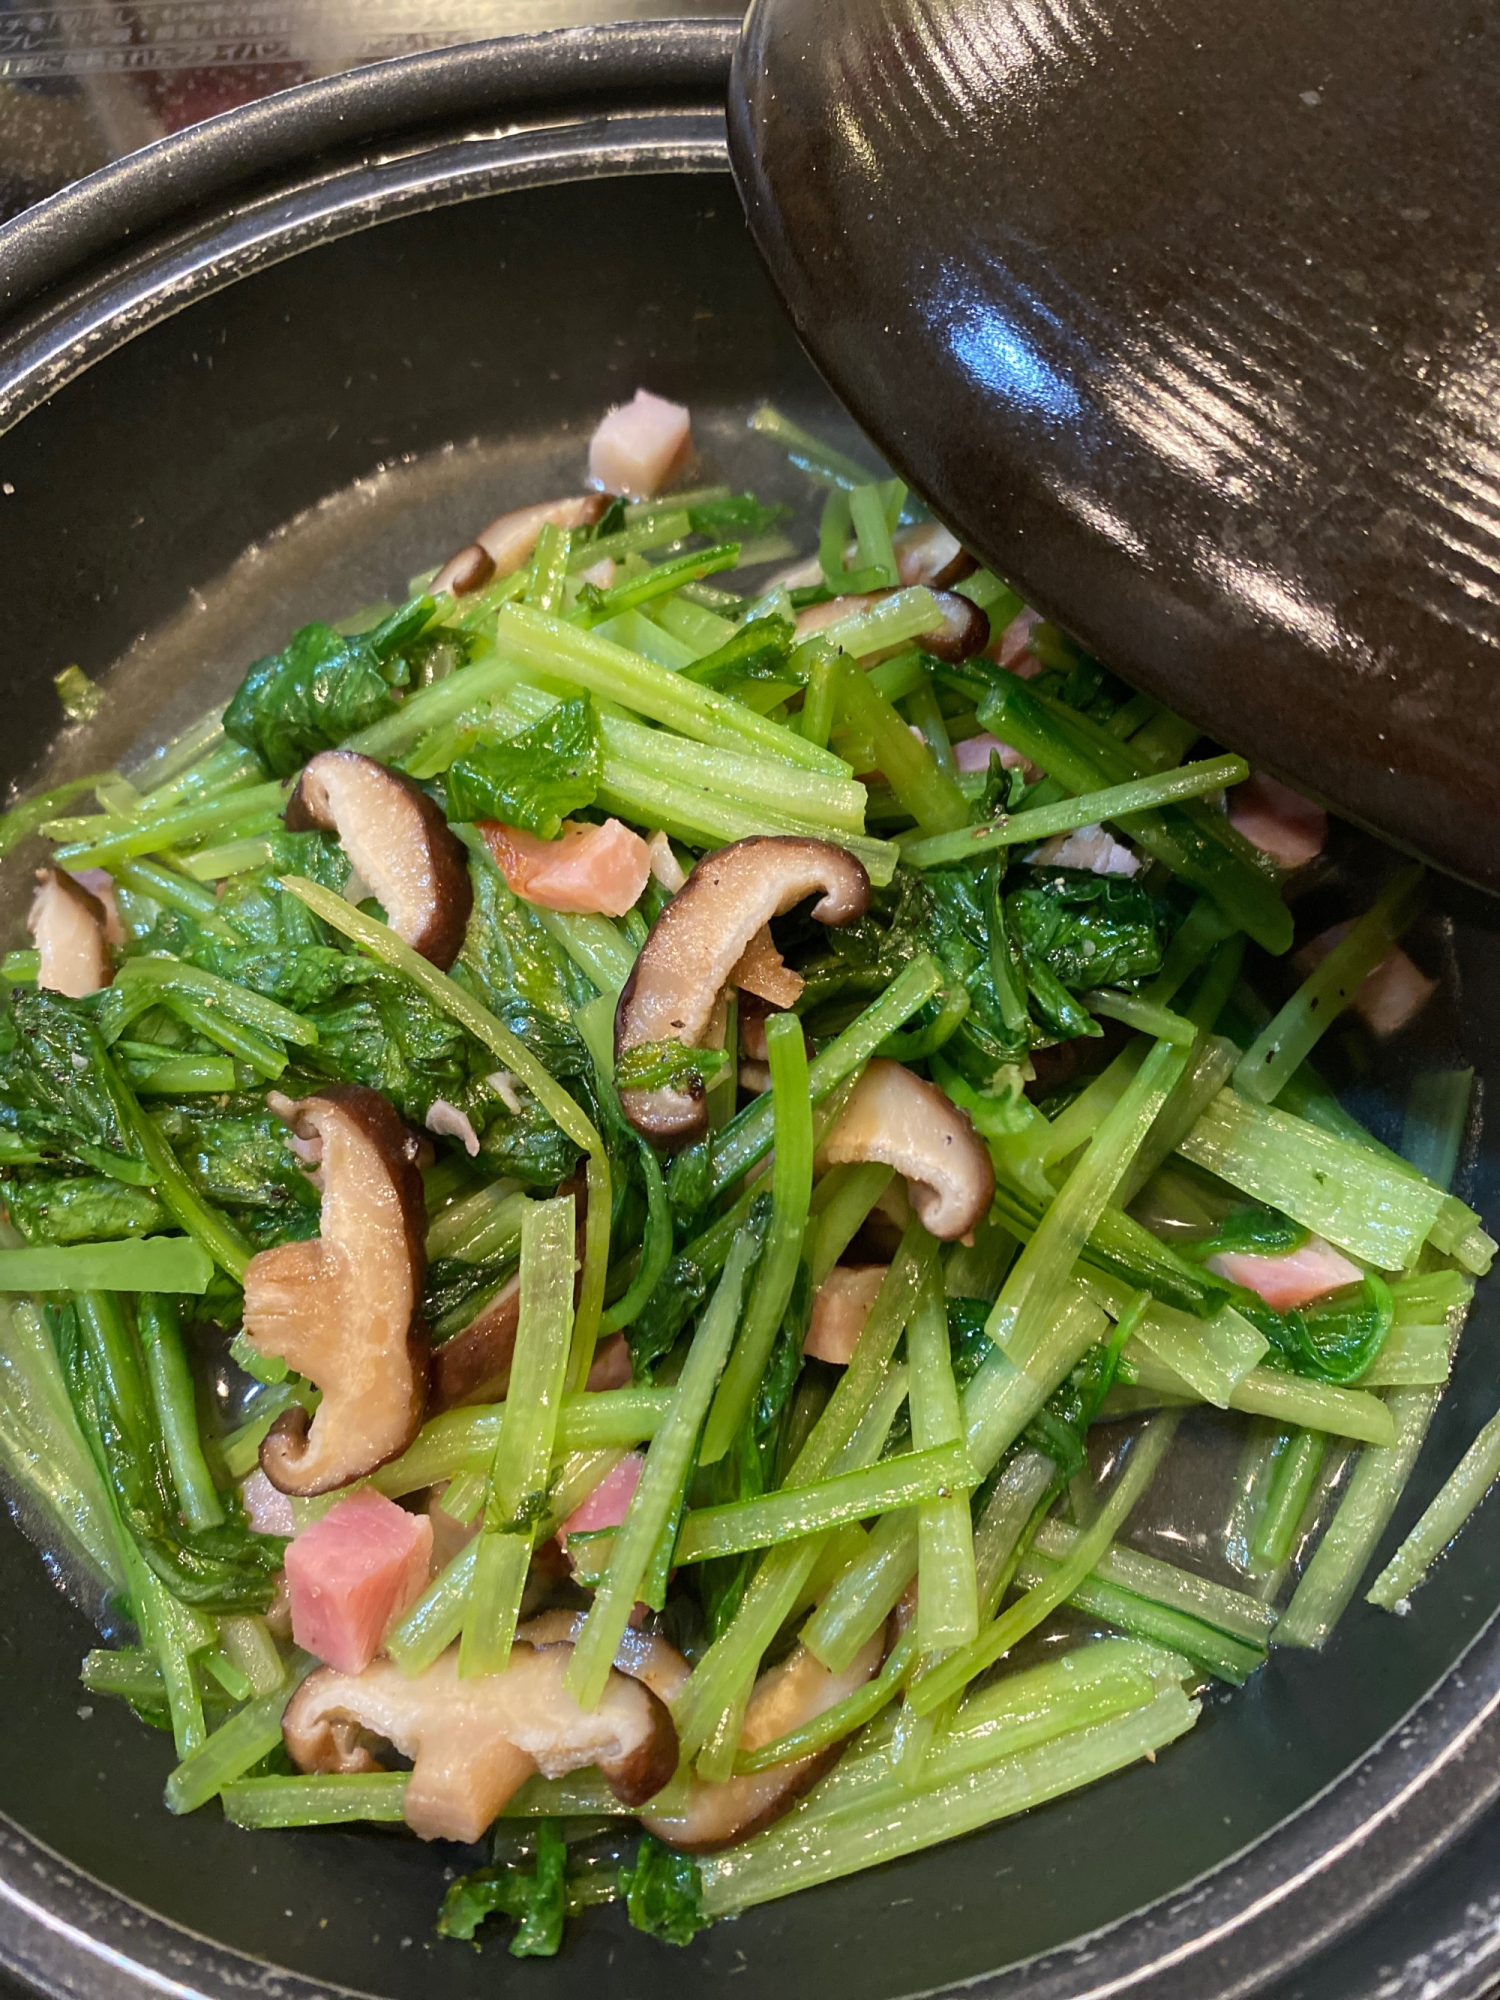 小松菜と椎茸のベーコンソテー